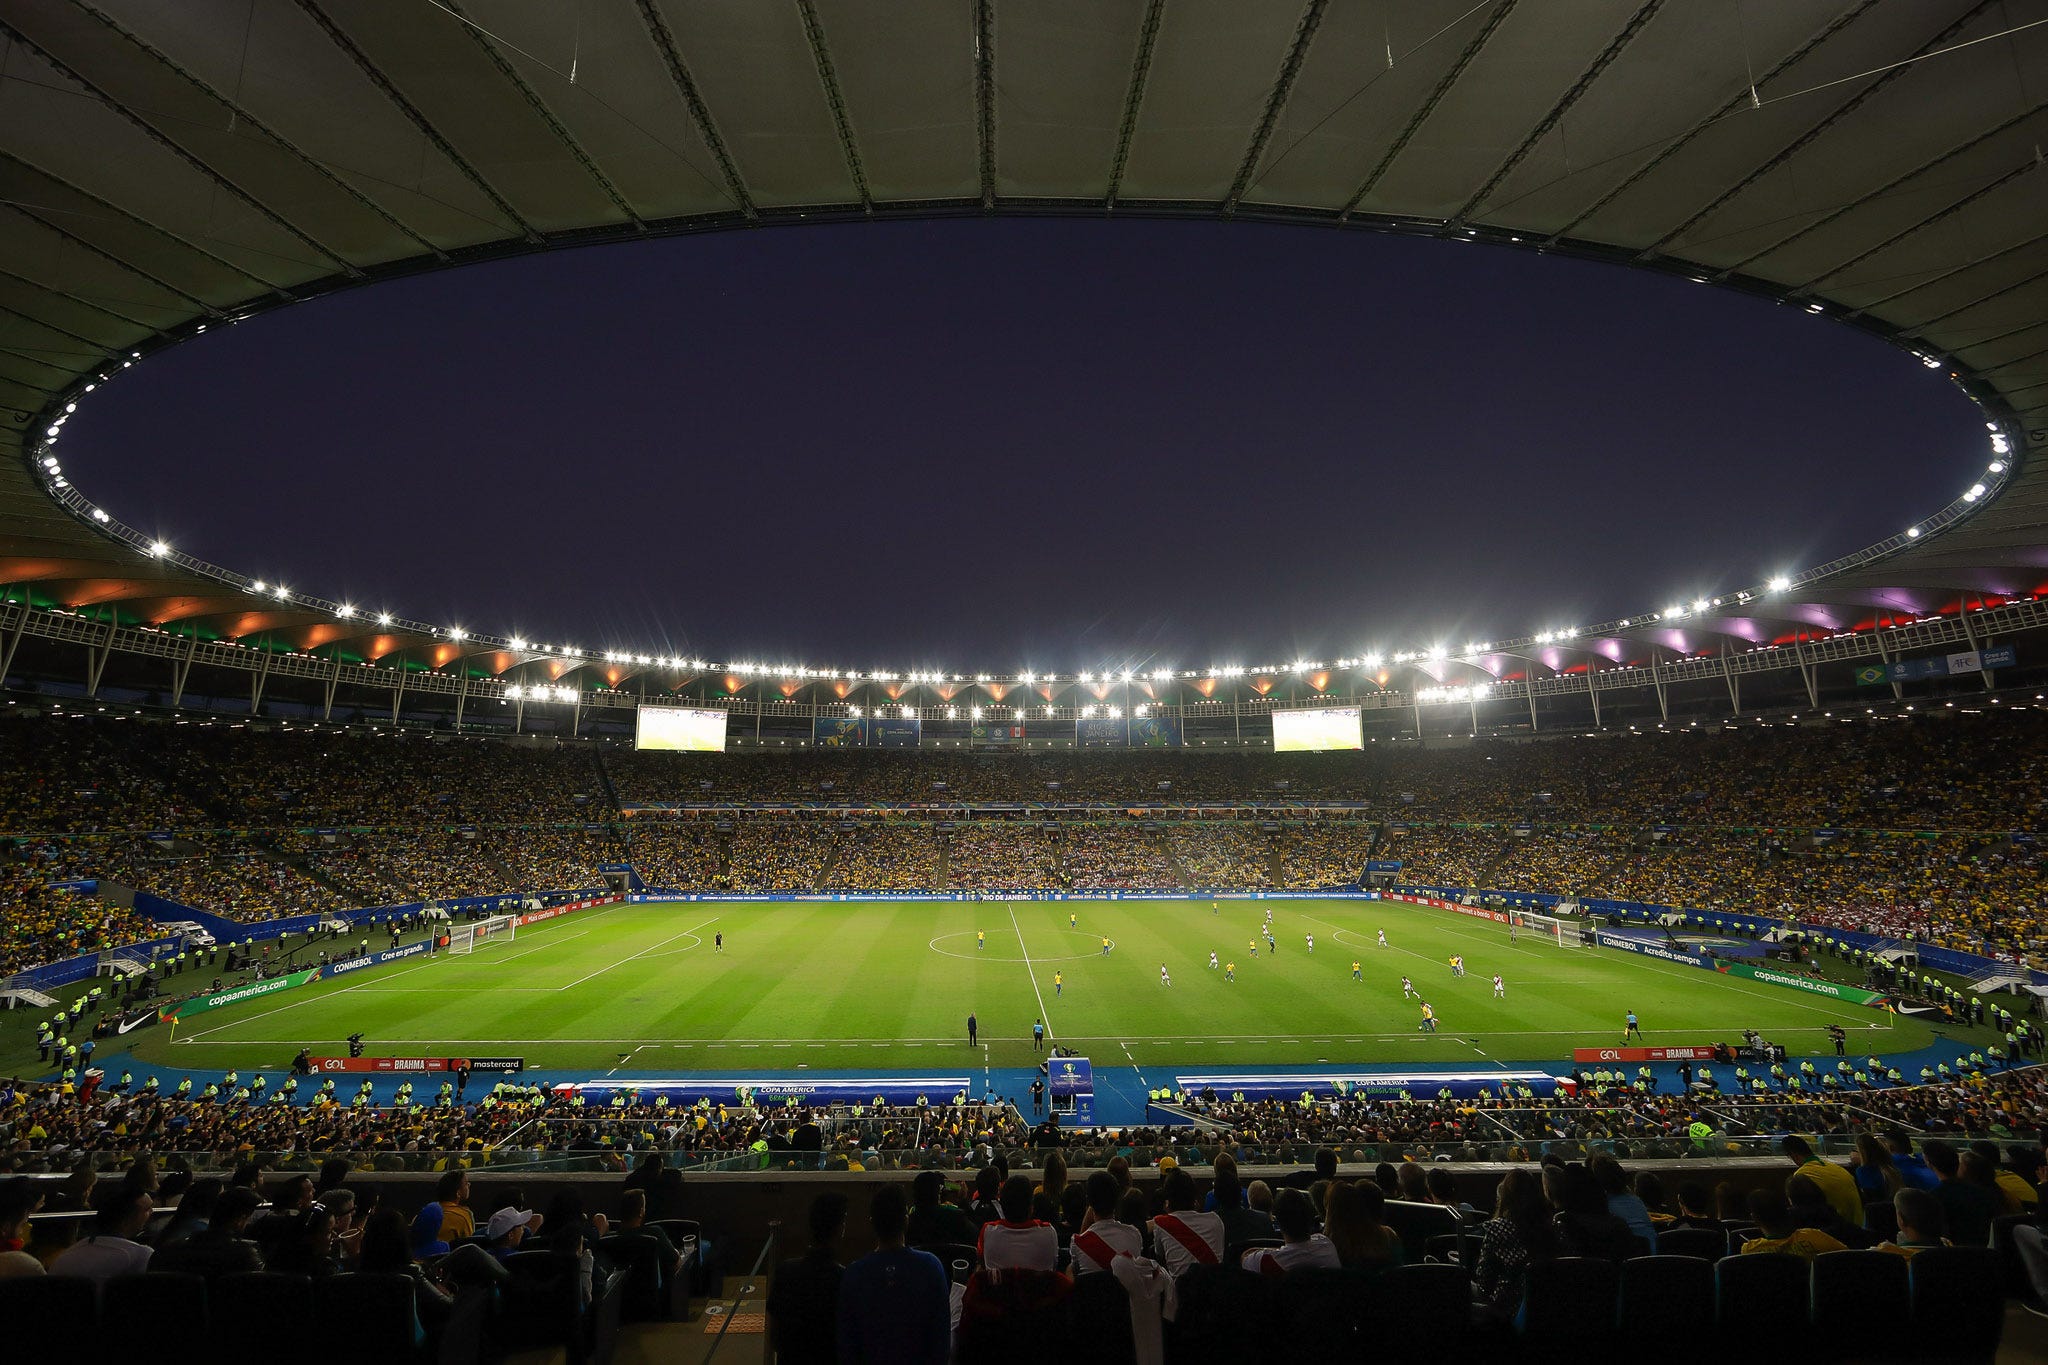 Maracanã 70 anos: derrotas históricas no estádio viraram motivo de aplausos  e até música na Argentina - Jornal O Globo